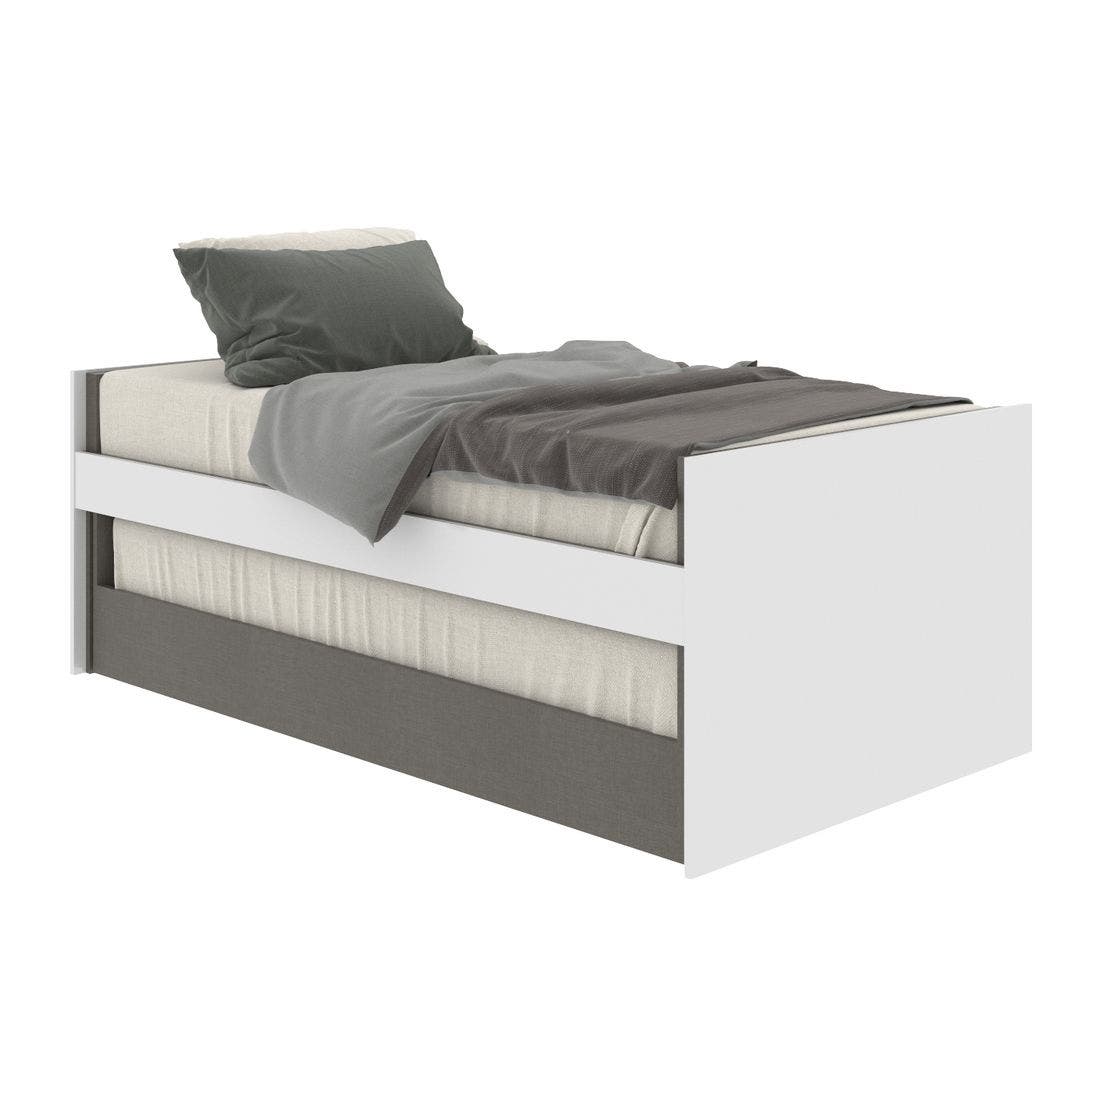 19203264-blisz-furniture-bedroom-furniture-beds-06